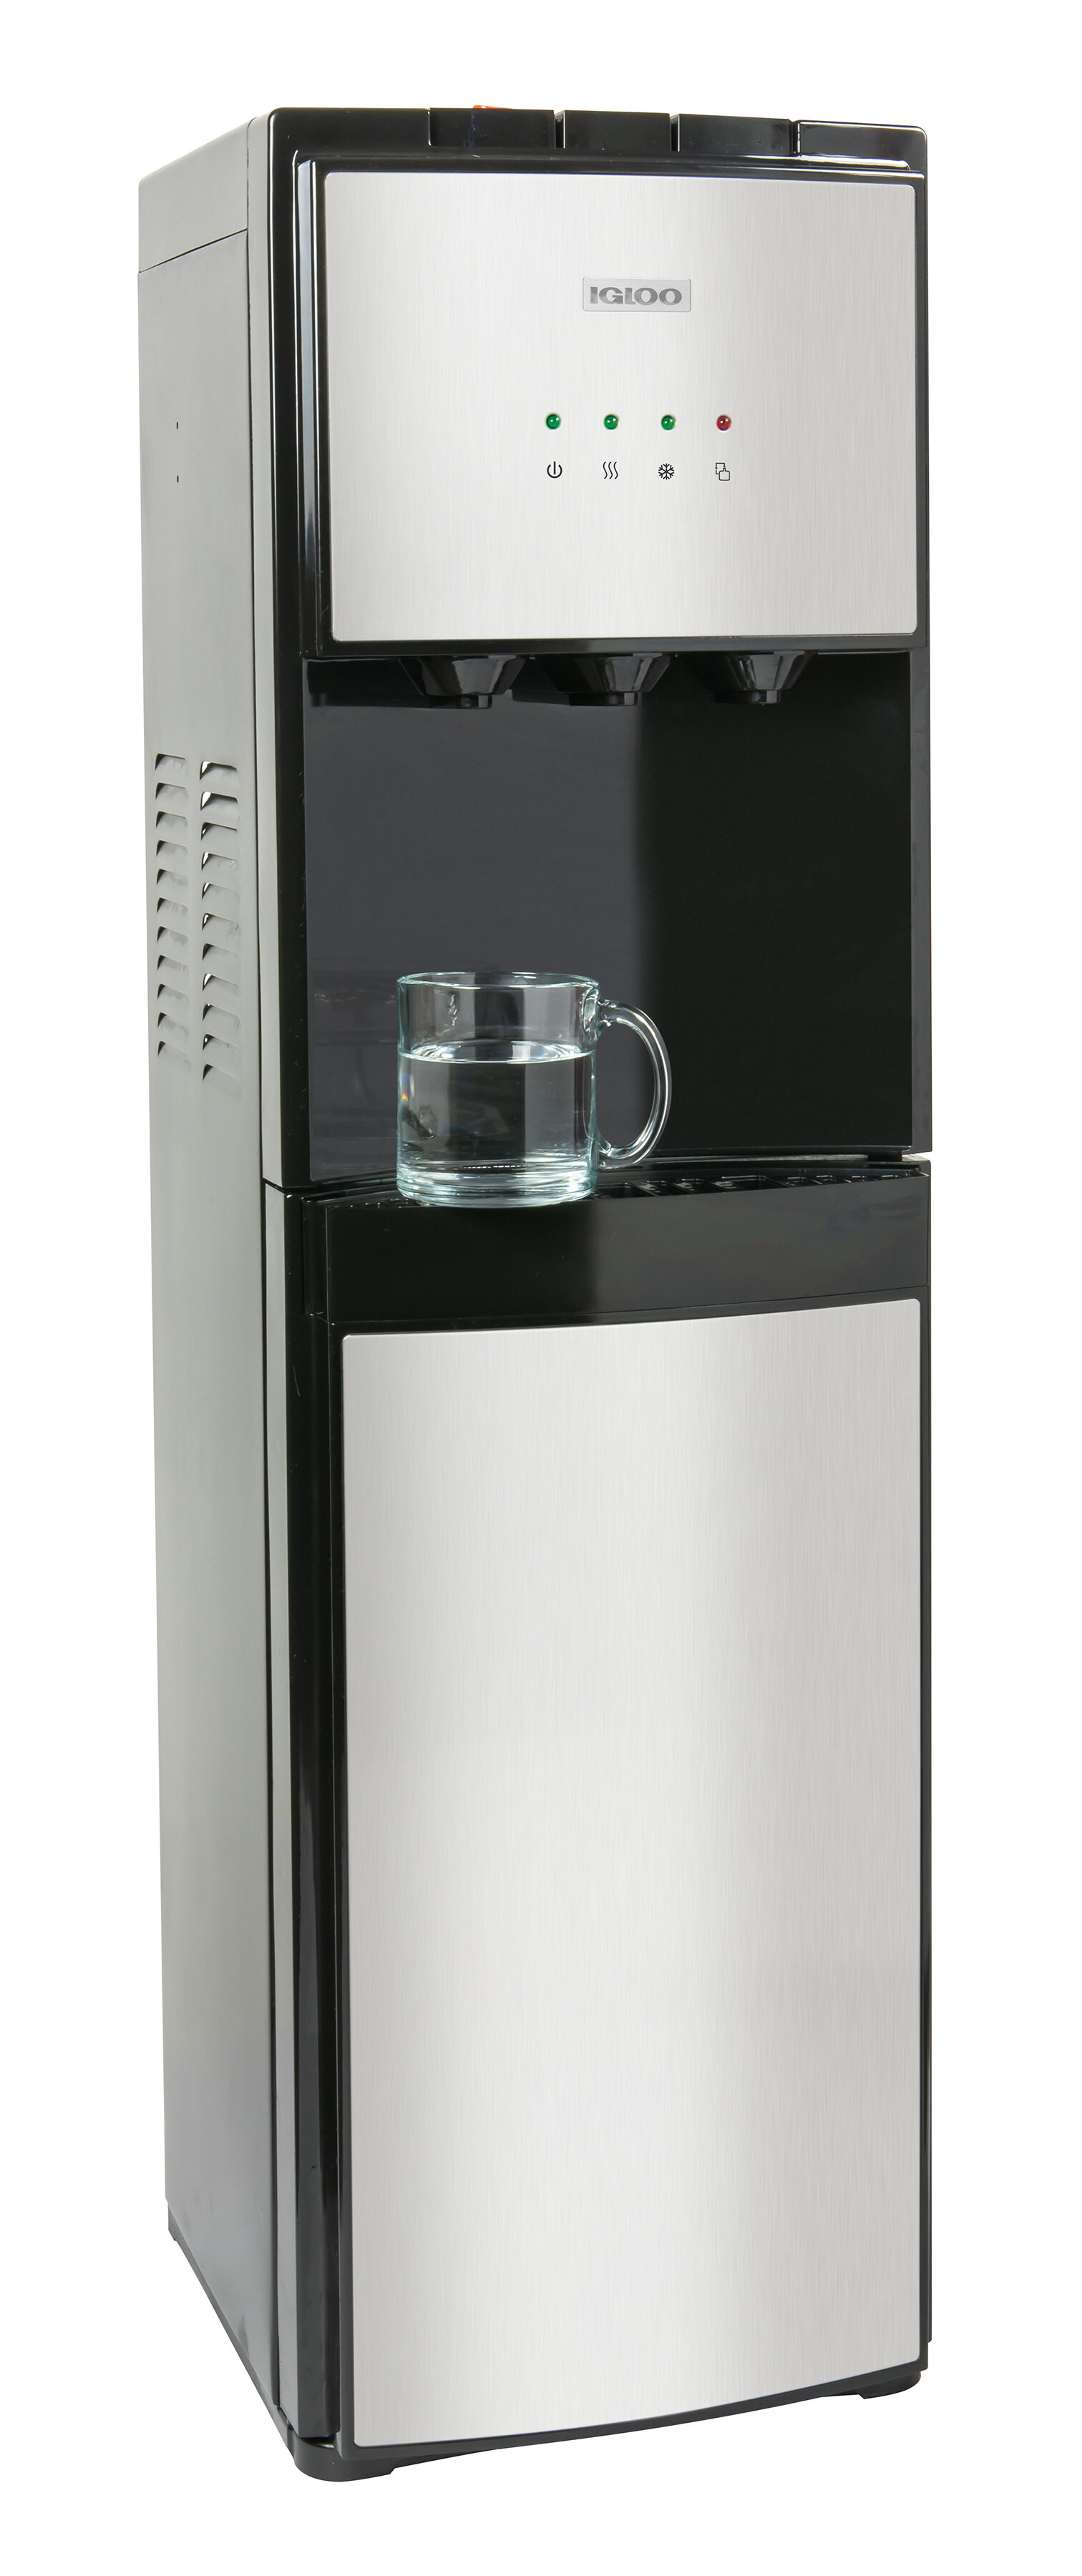 Bottom Loading Water Dispenser